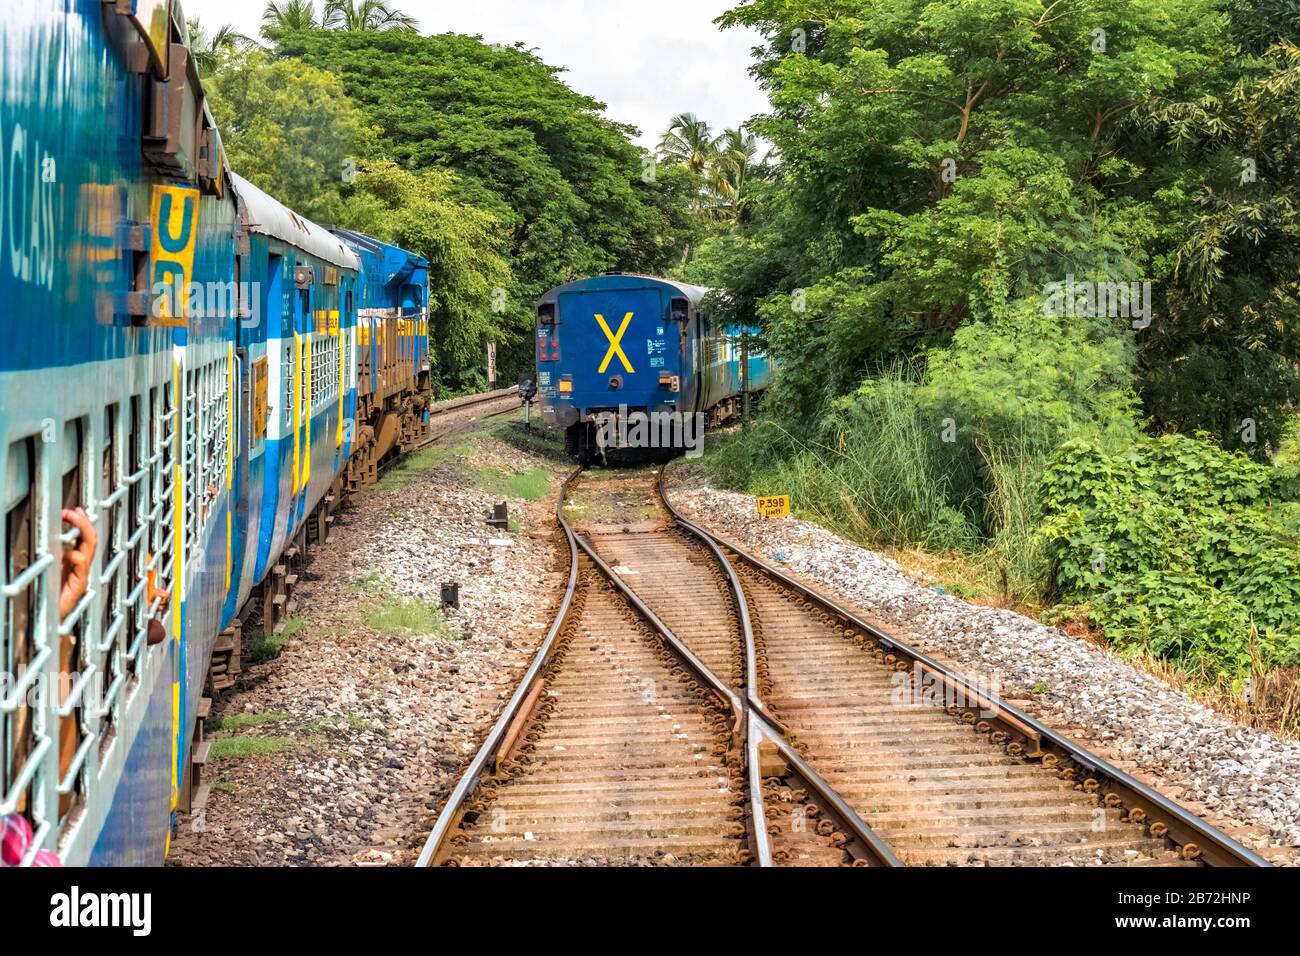 Der langsam fahrende Zug der Indian Railways, der von der Kreuzung abfährt und einen angehaltenen Zug mitten im Grün der Western Ghats überholen kann.Reisekonzept, Reise. Stockfoto